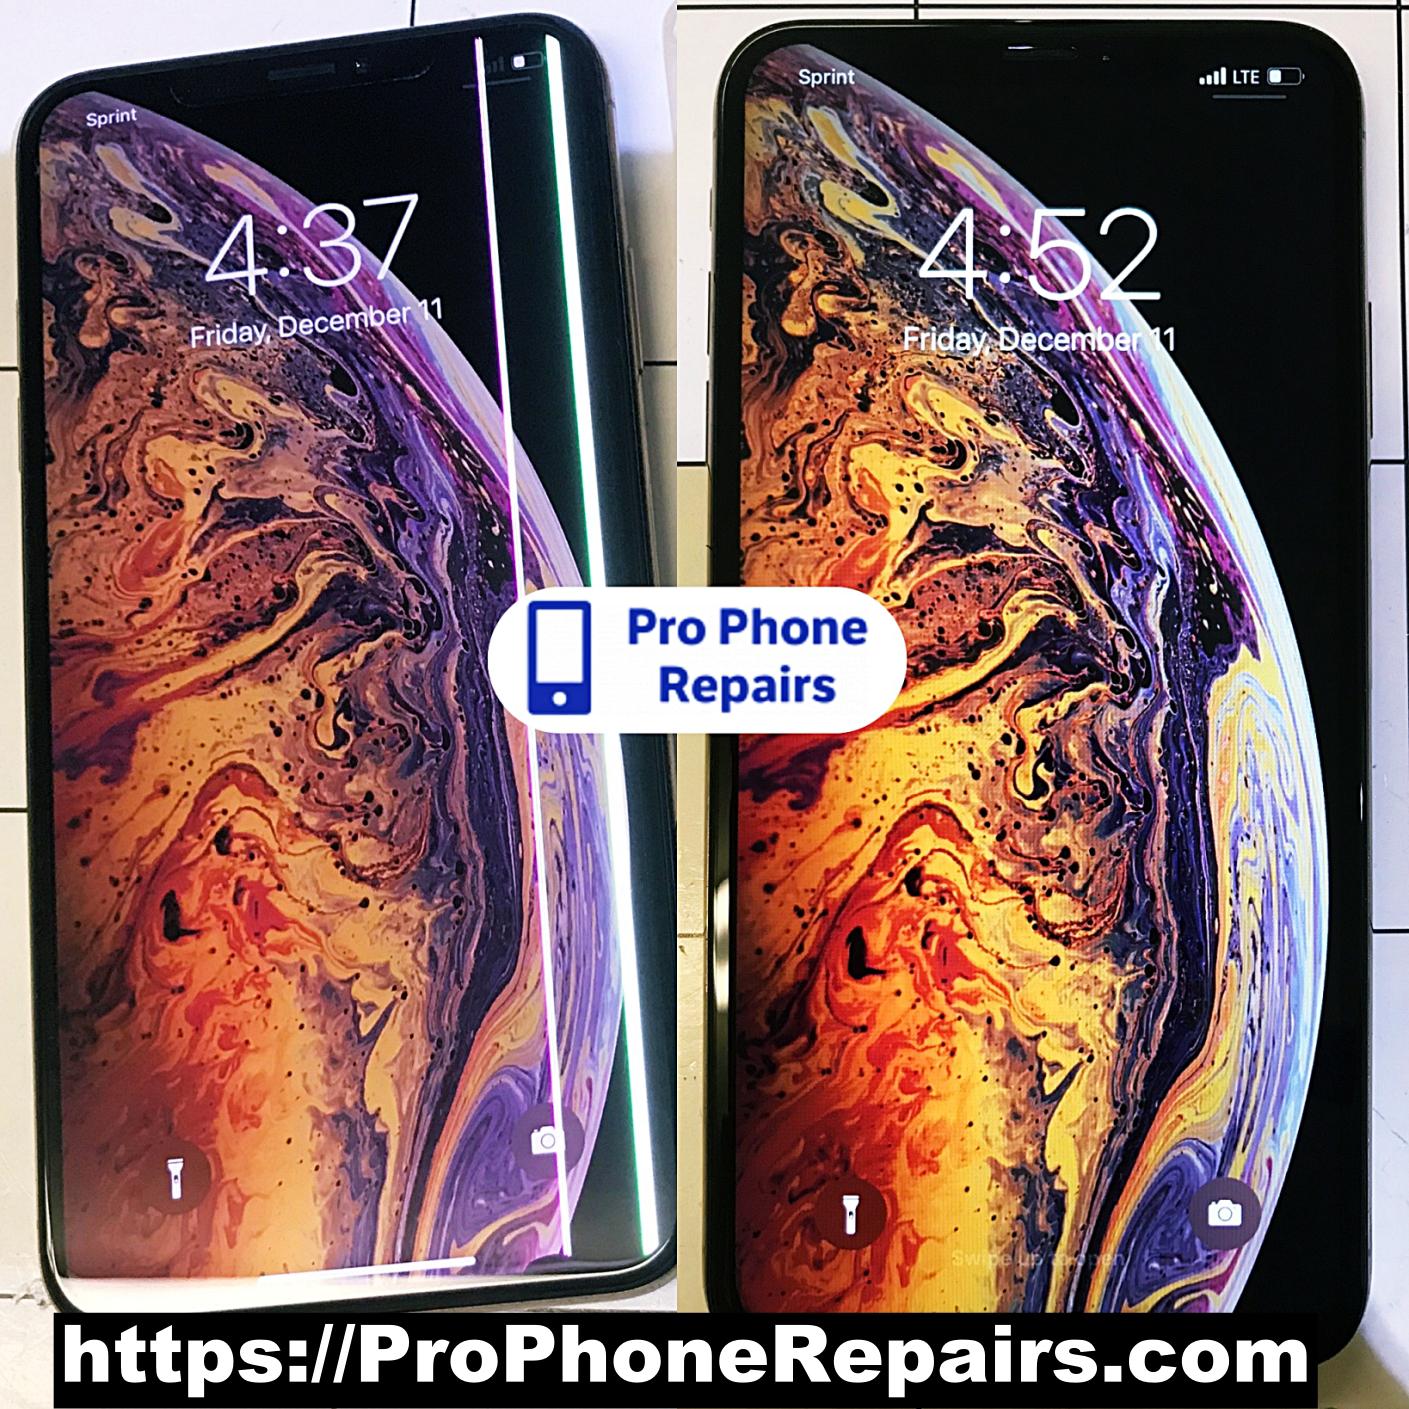 iPhone LCD Repair in Albuquerque NM by Pro Phone Repairs of Albuquerque